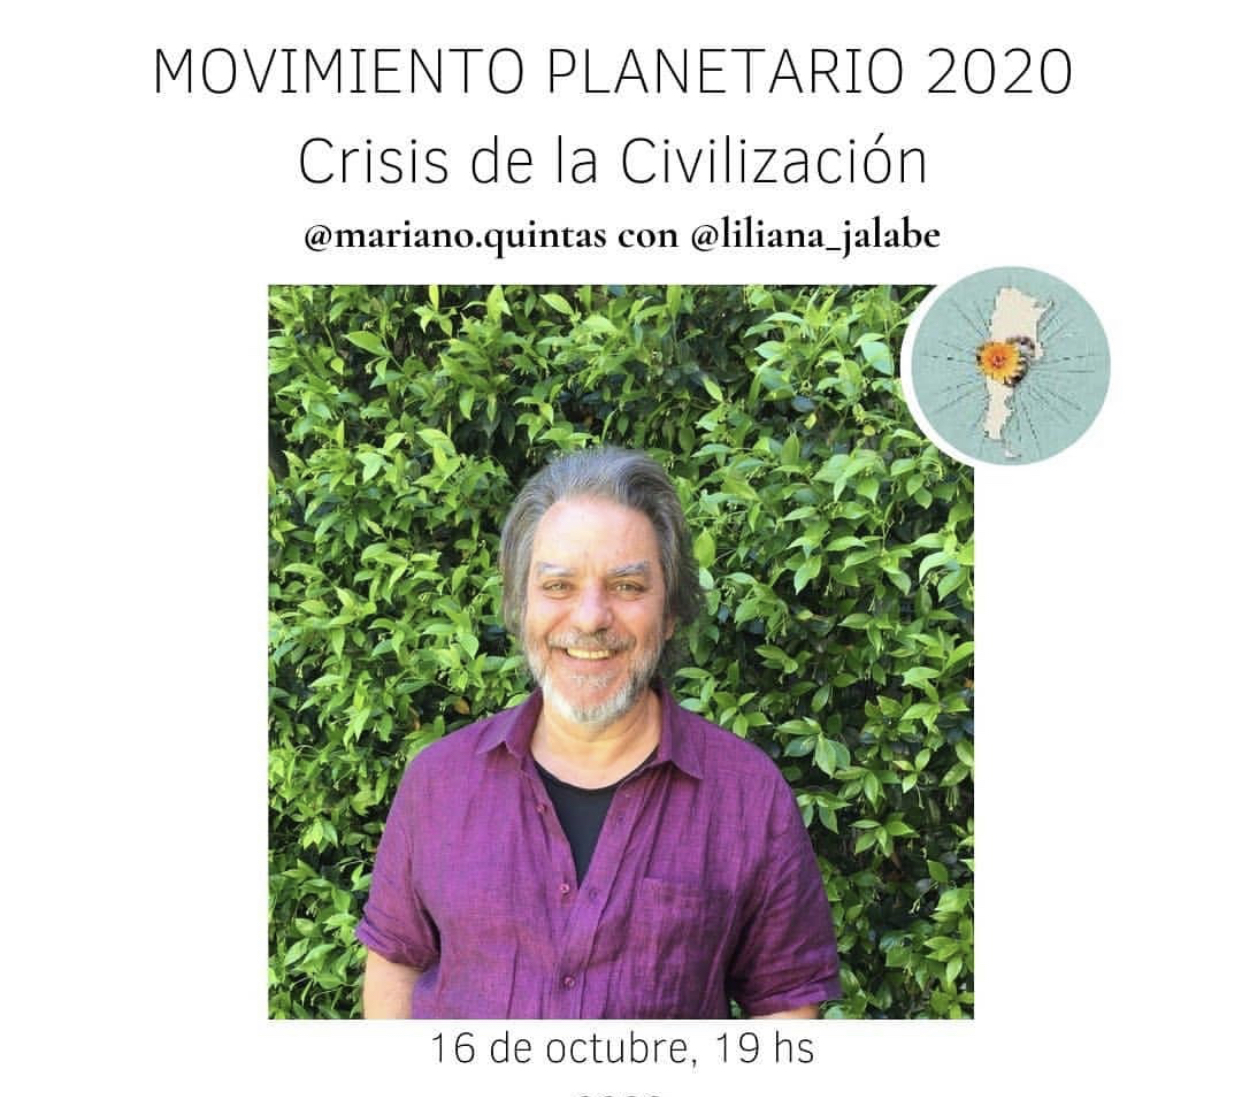 Movimiento planetario 2020 - Crisis y civilización - Astrología Mariano Quintas